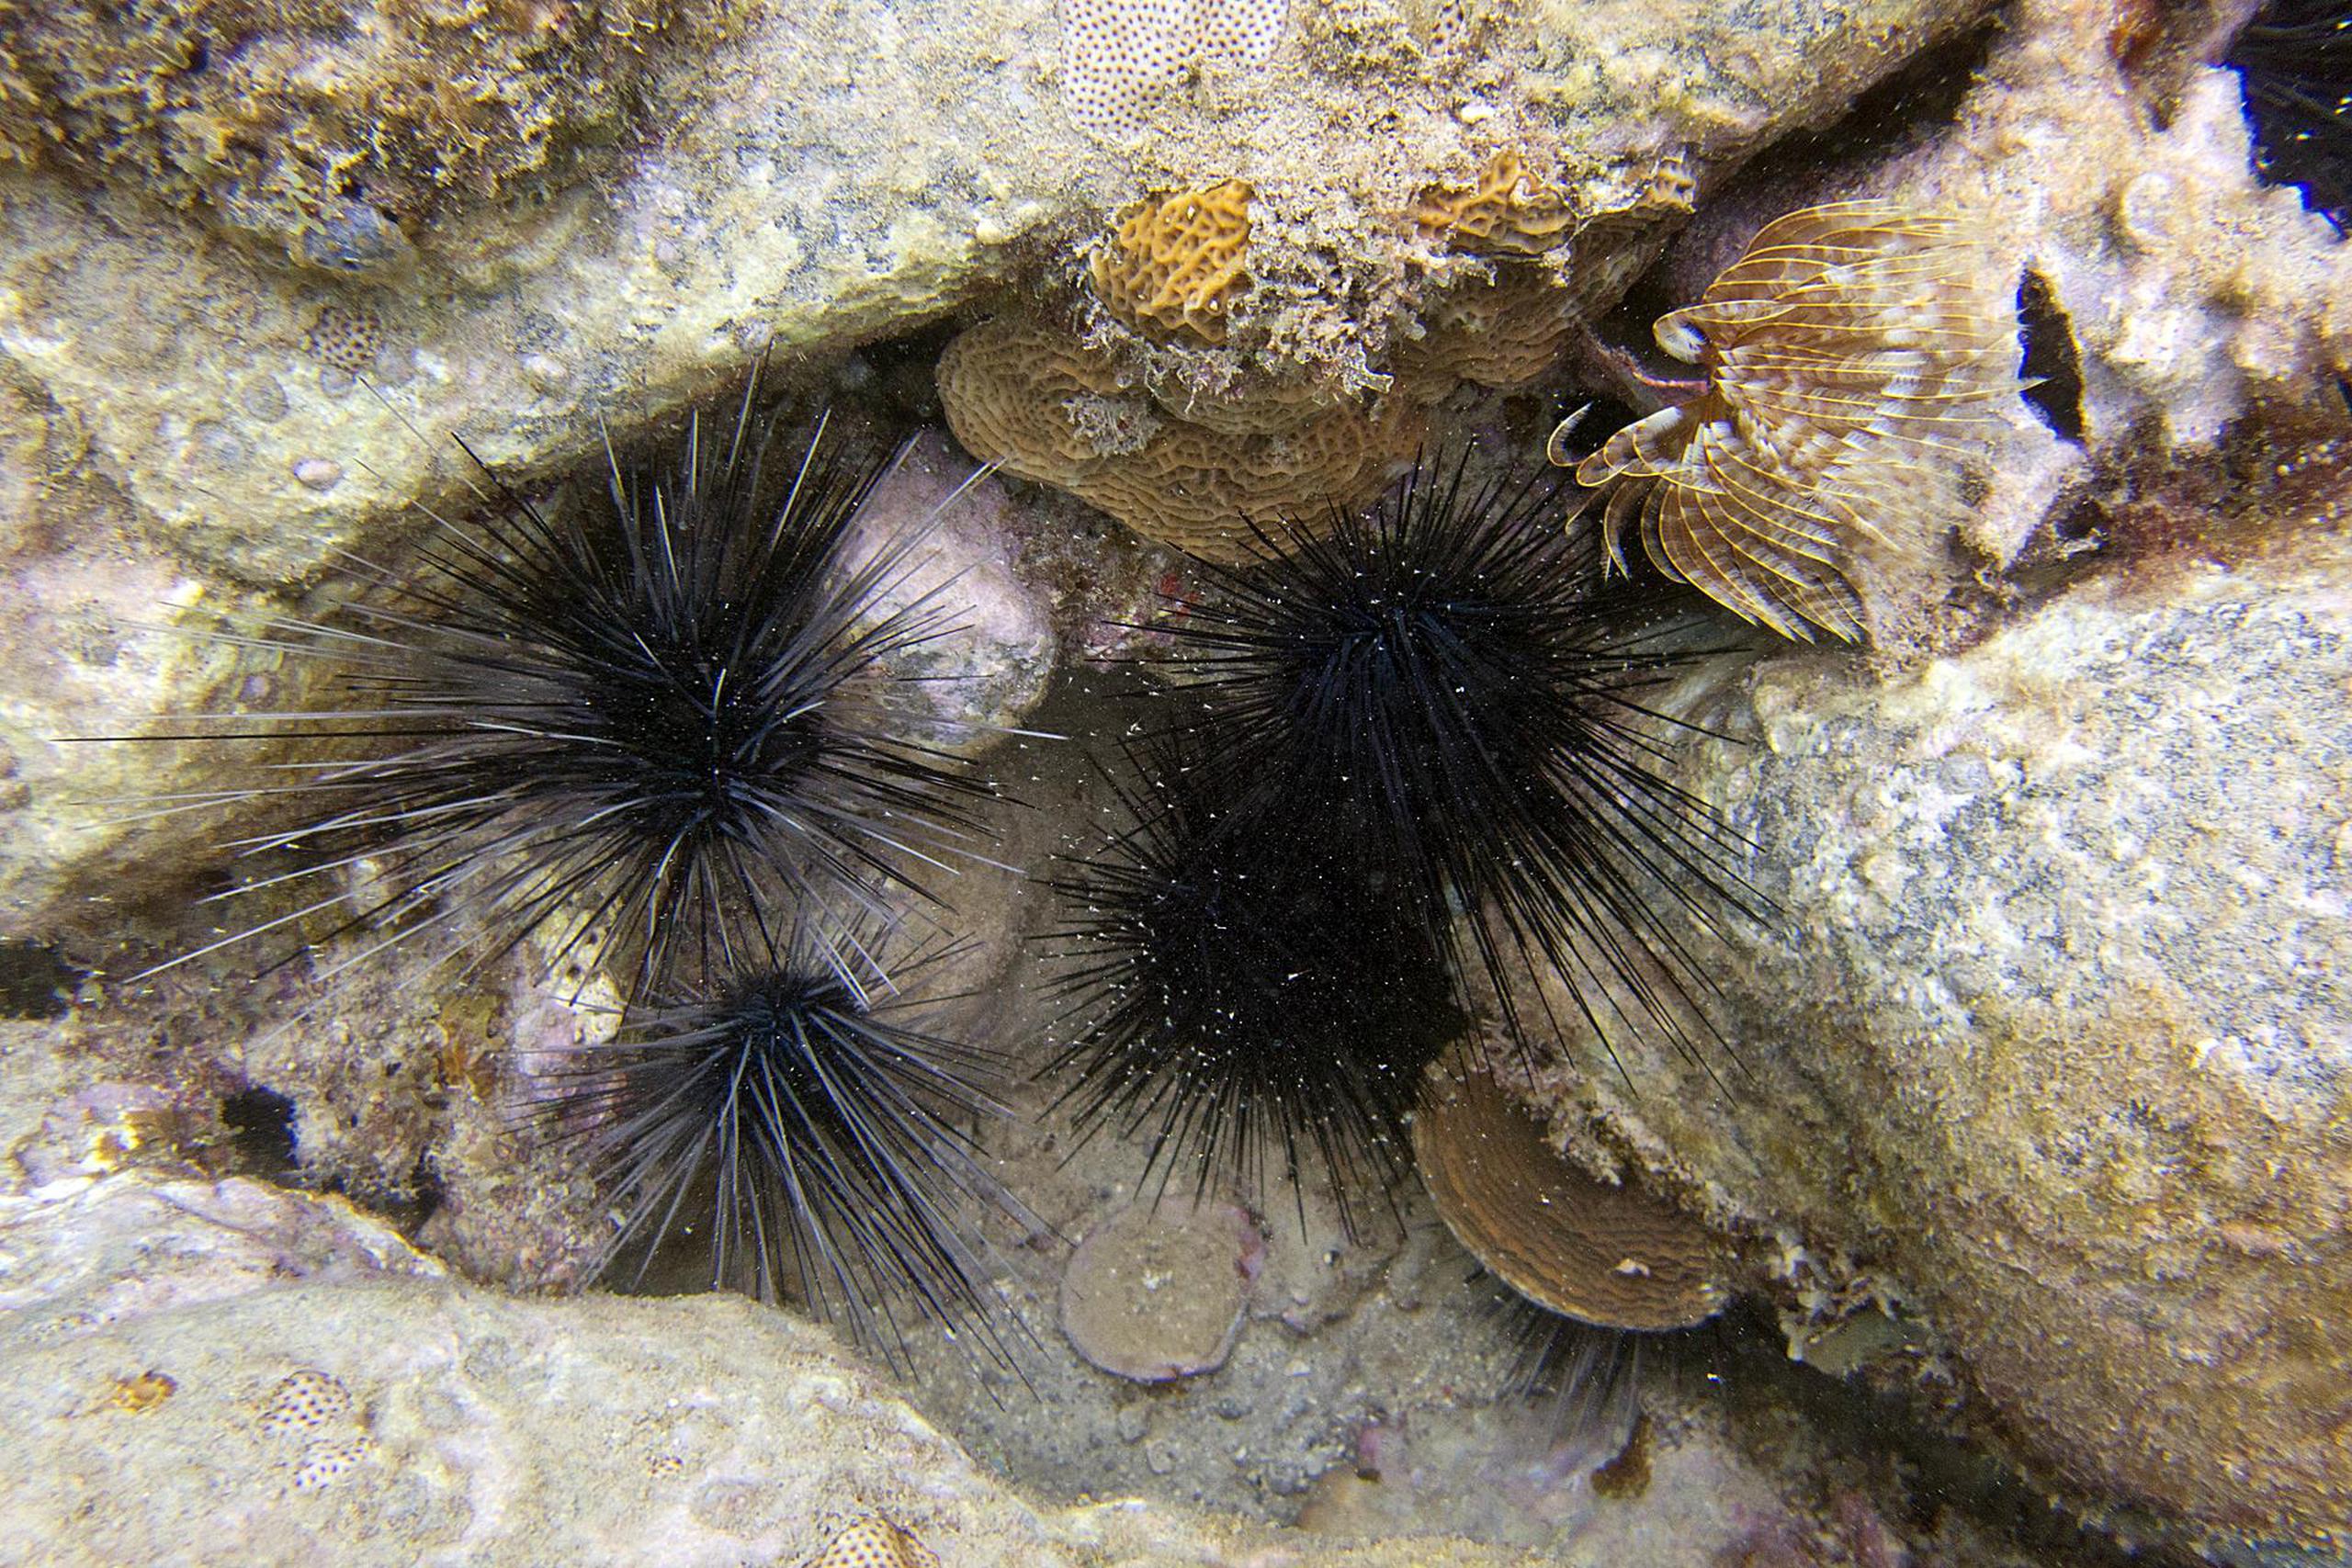 Fotografía cedida por la organización Atlantic and Gulf Rapid Reef Assessment donde se aprecia un erizo de espinas largas (Diadema antillarum).